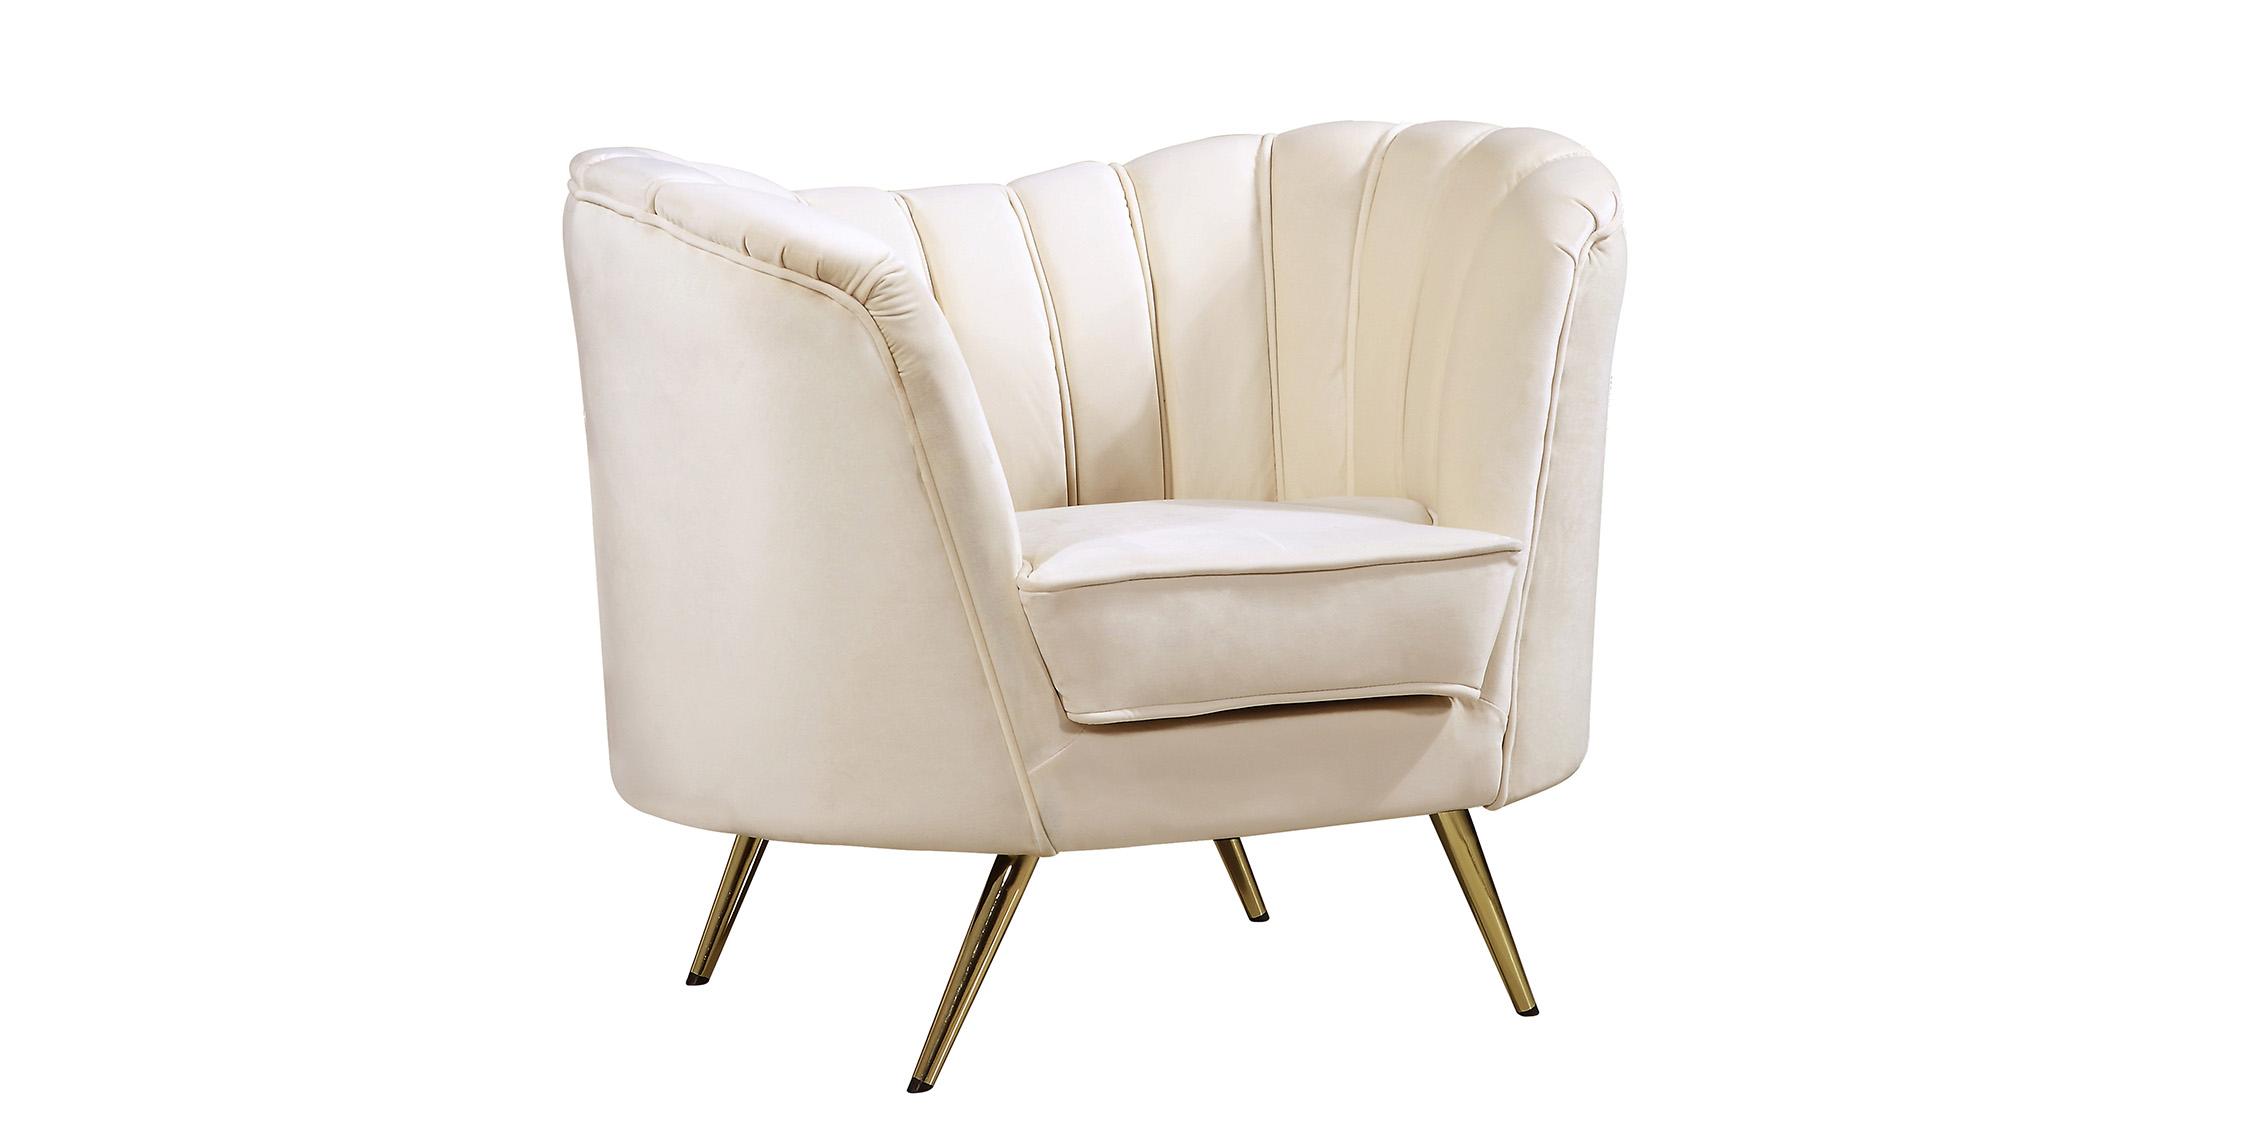 Contemporary, Modern Arm Chair Margo 622Cream-C 622Cream-C in Cream Velvet